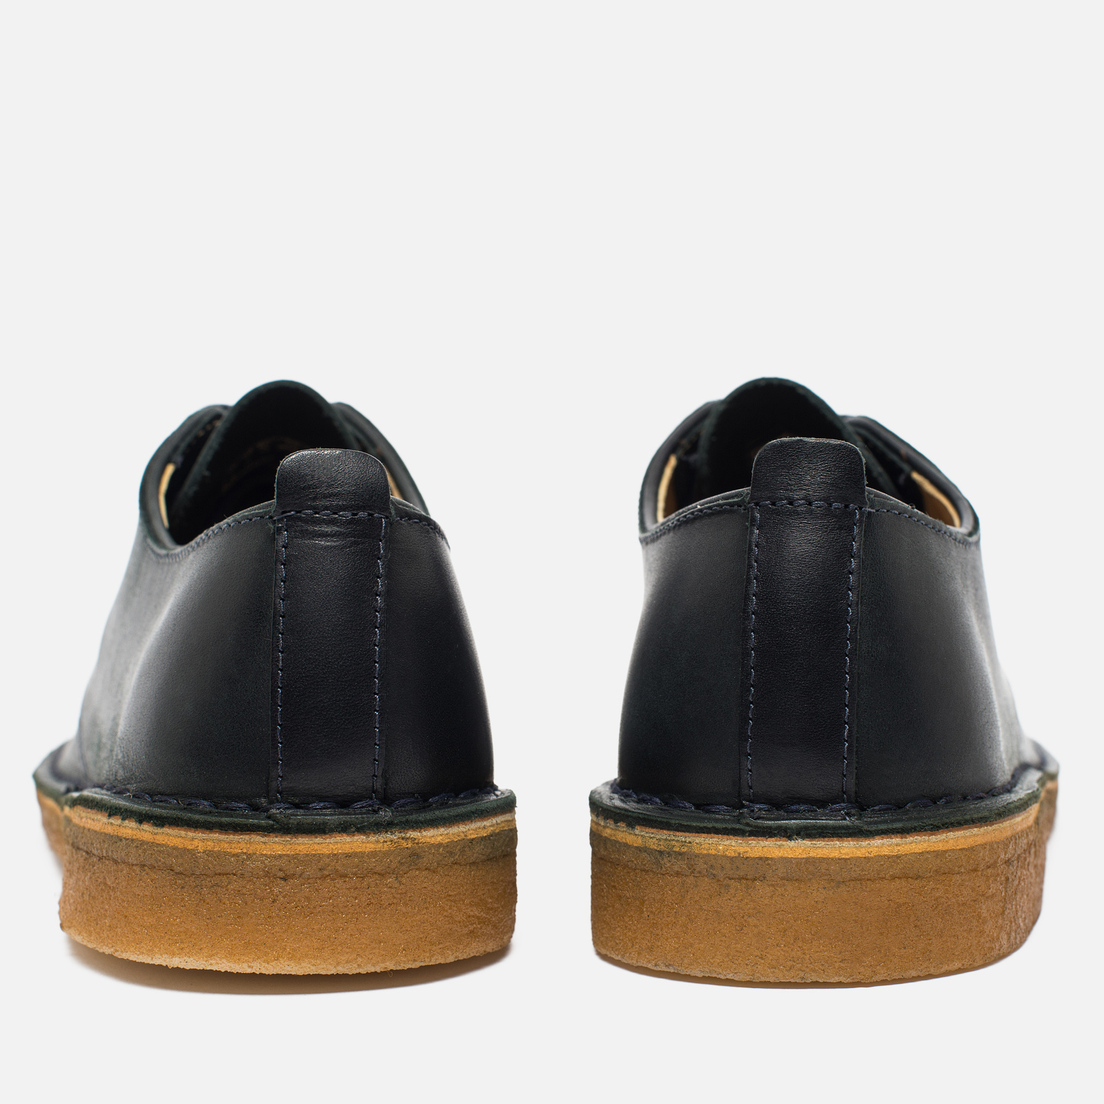 Clarks Originals Мужские ботинки Desert London Leather